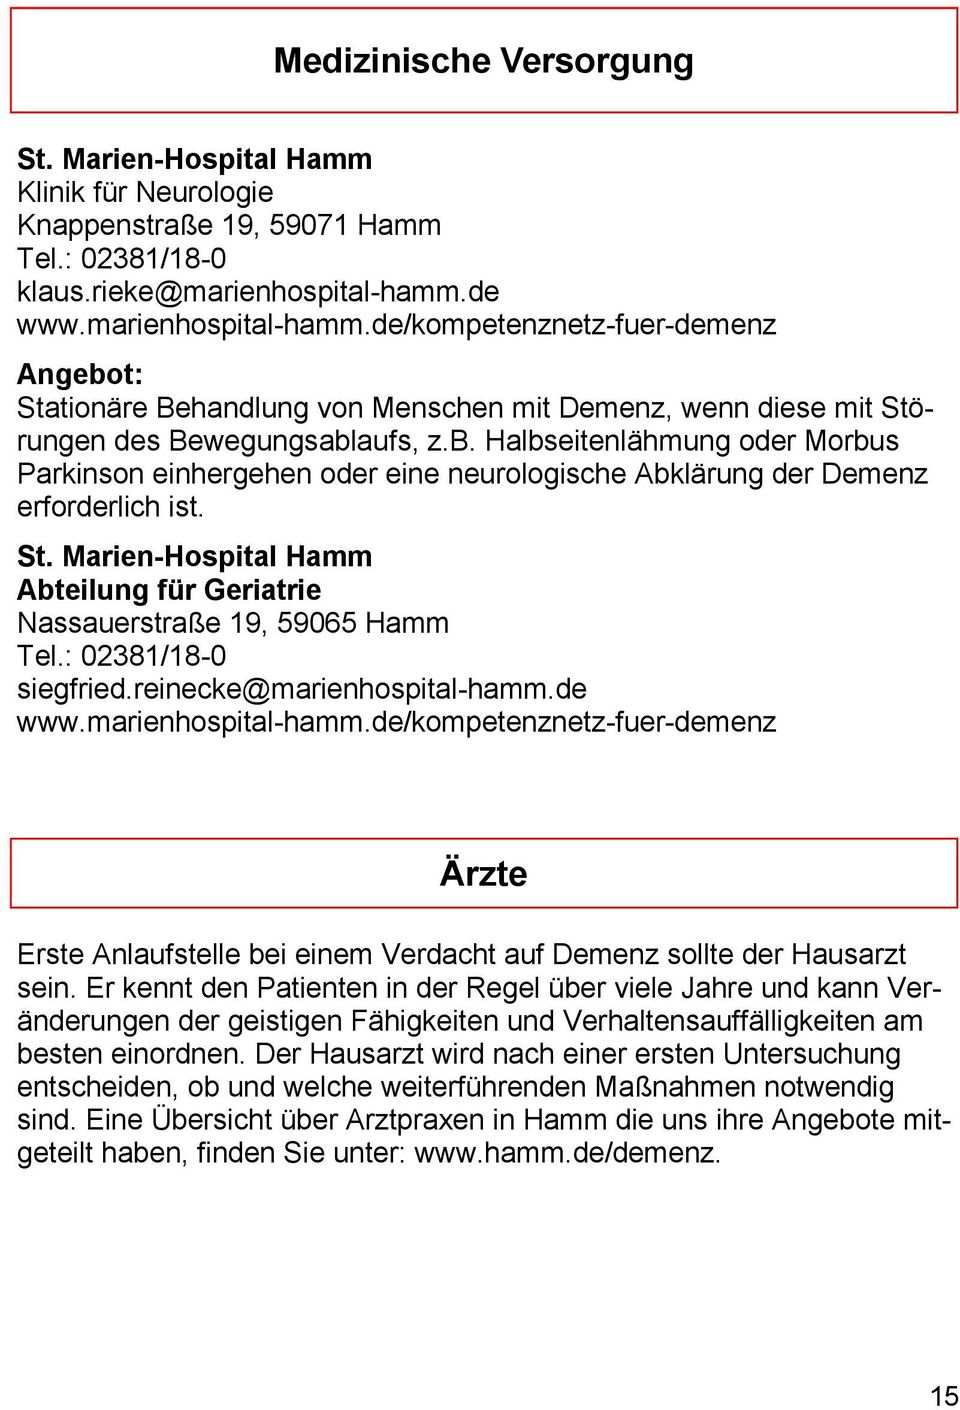 St. Marien-Hospital Hamm Abteilung für Geriatrie Nassauerstraße 19, 59065 Hamm Tel.: 02381/18-0 siegfried.reinecke@marienhospital-hamm.